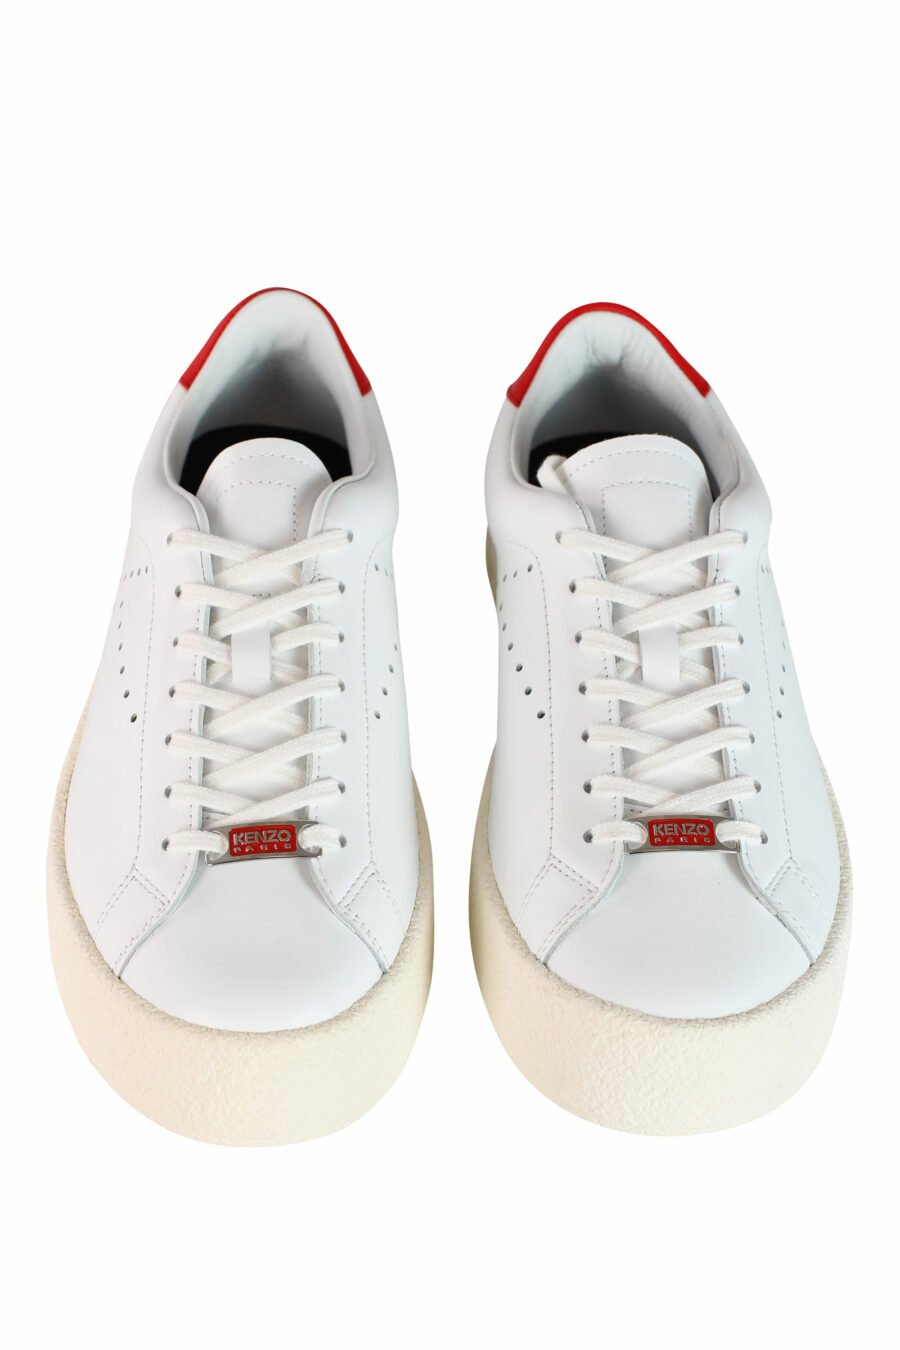 Baskets "kenzoswing" blanches avec logo et détails rouges - IMG 3556